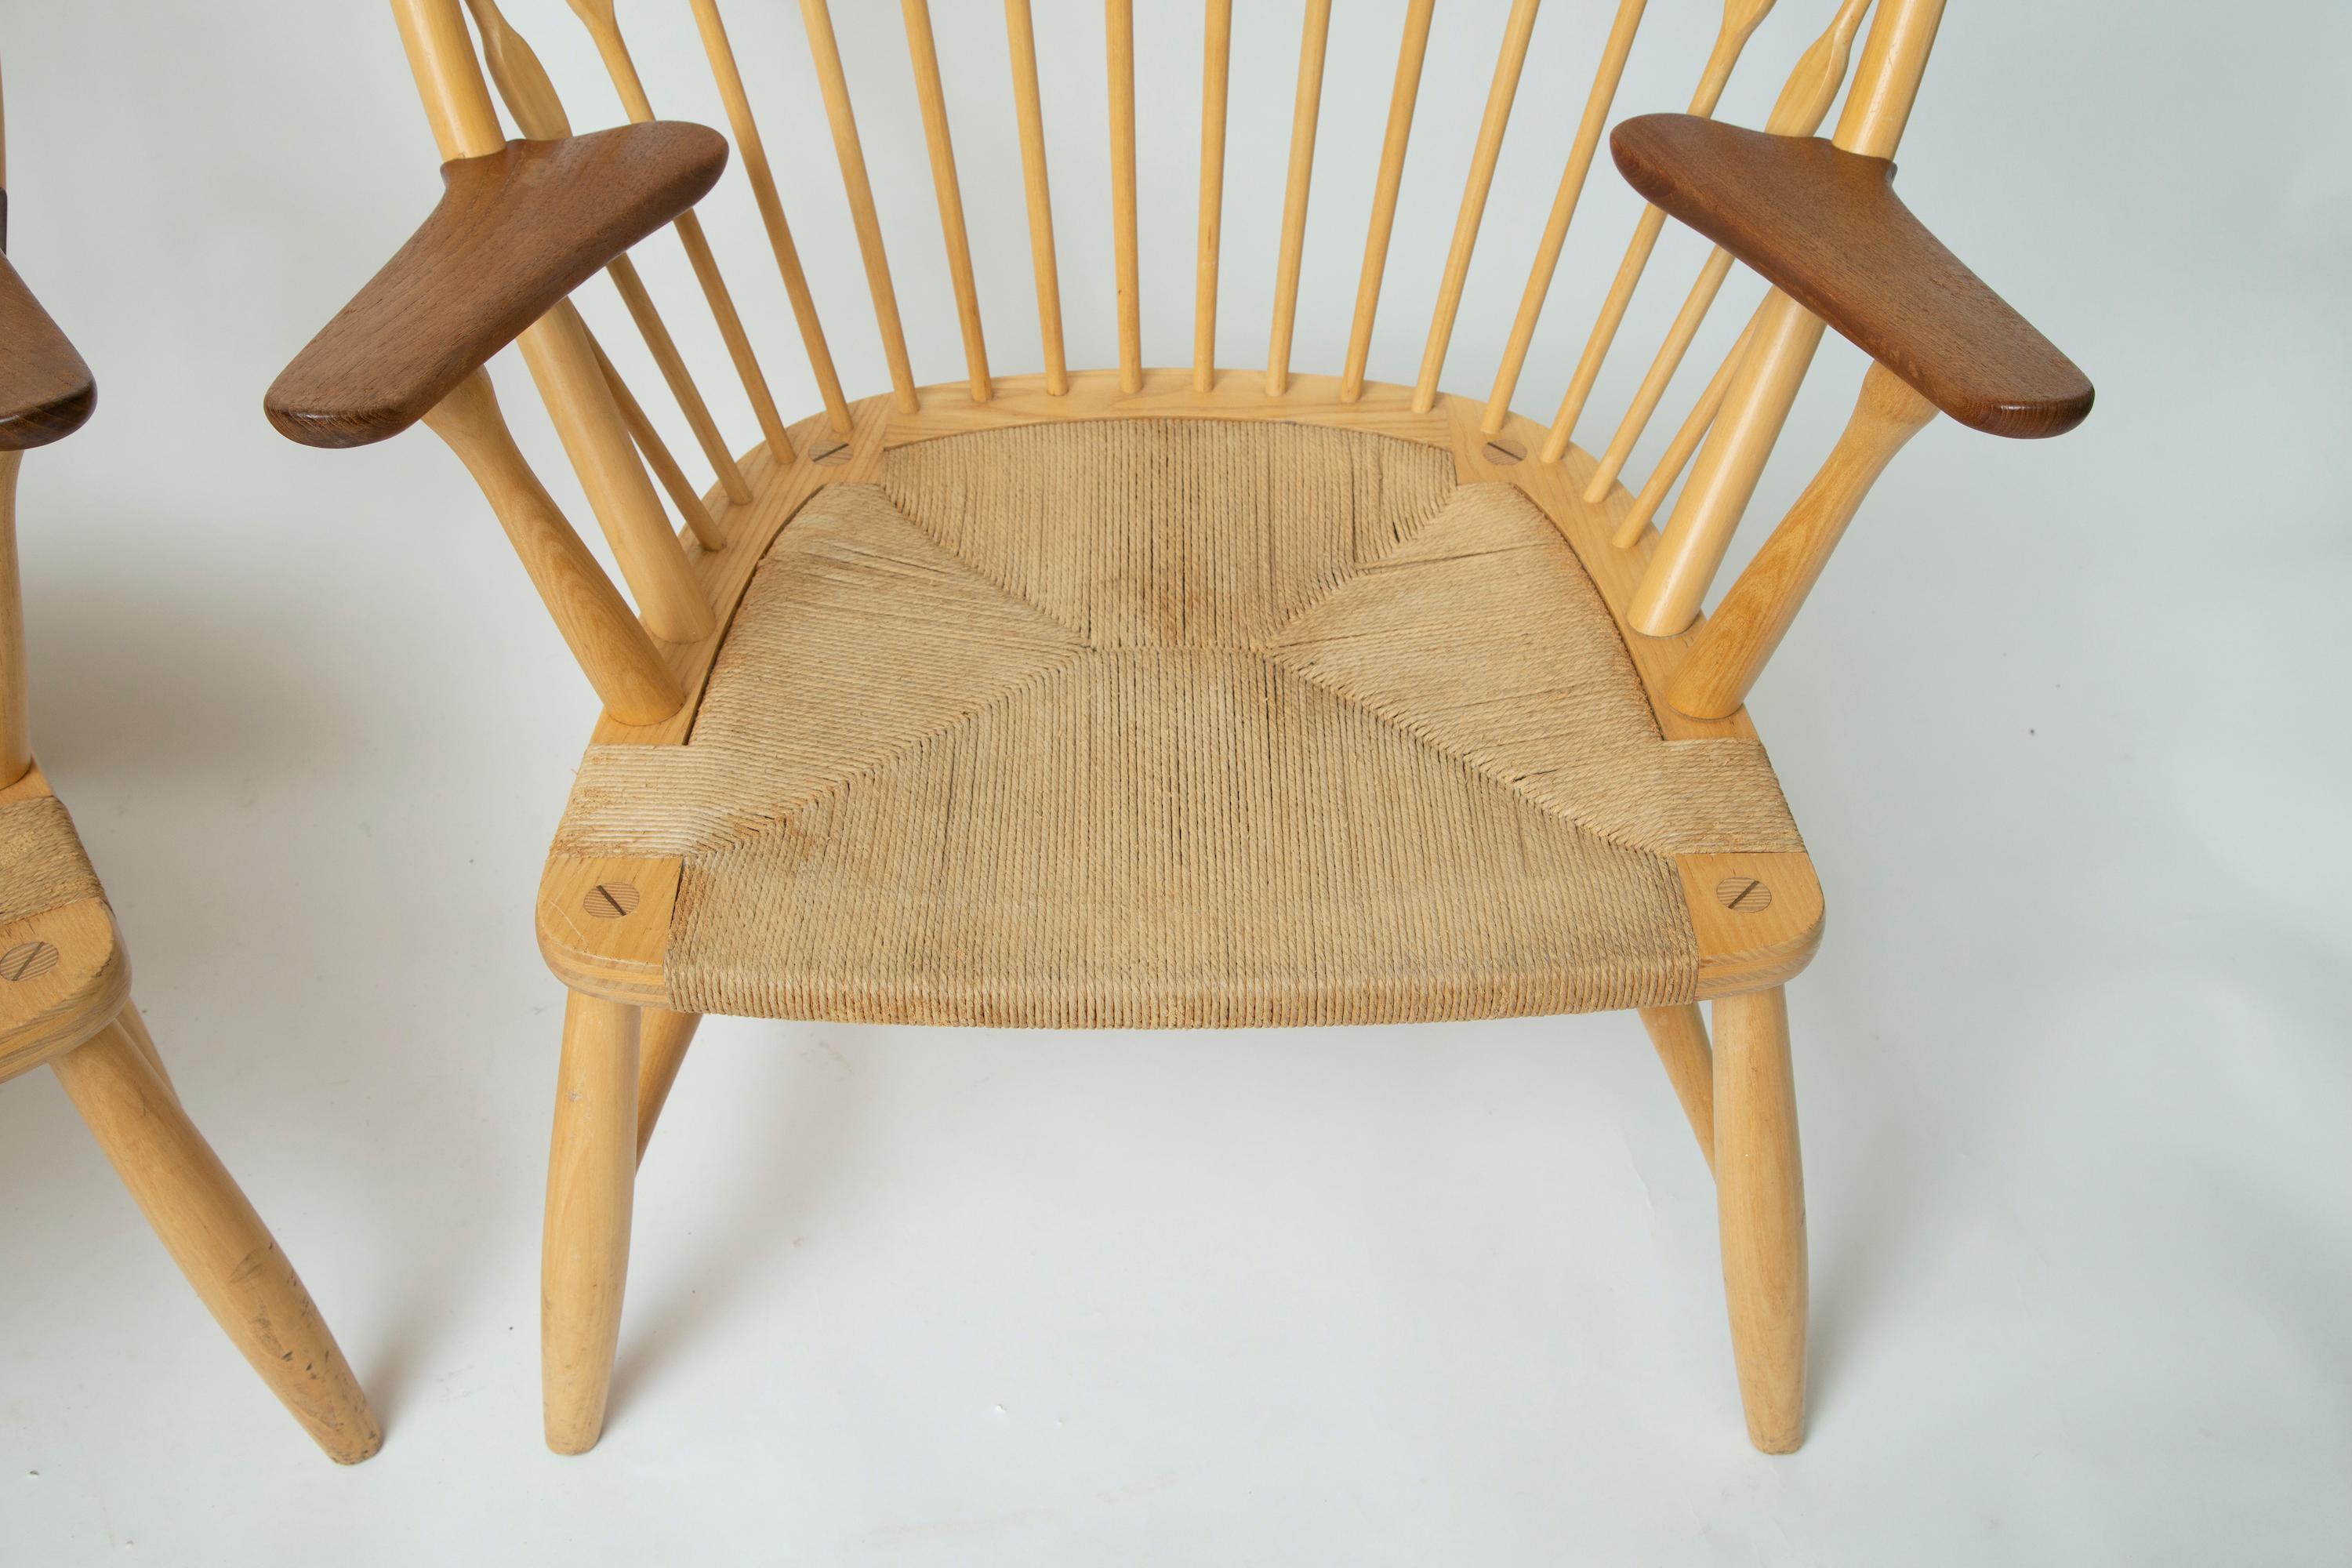 Un bel ensemble de chaises.
Achetés ensemble chez Knoll dans les années 1960.
Signature de la marque.